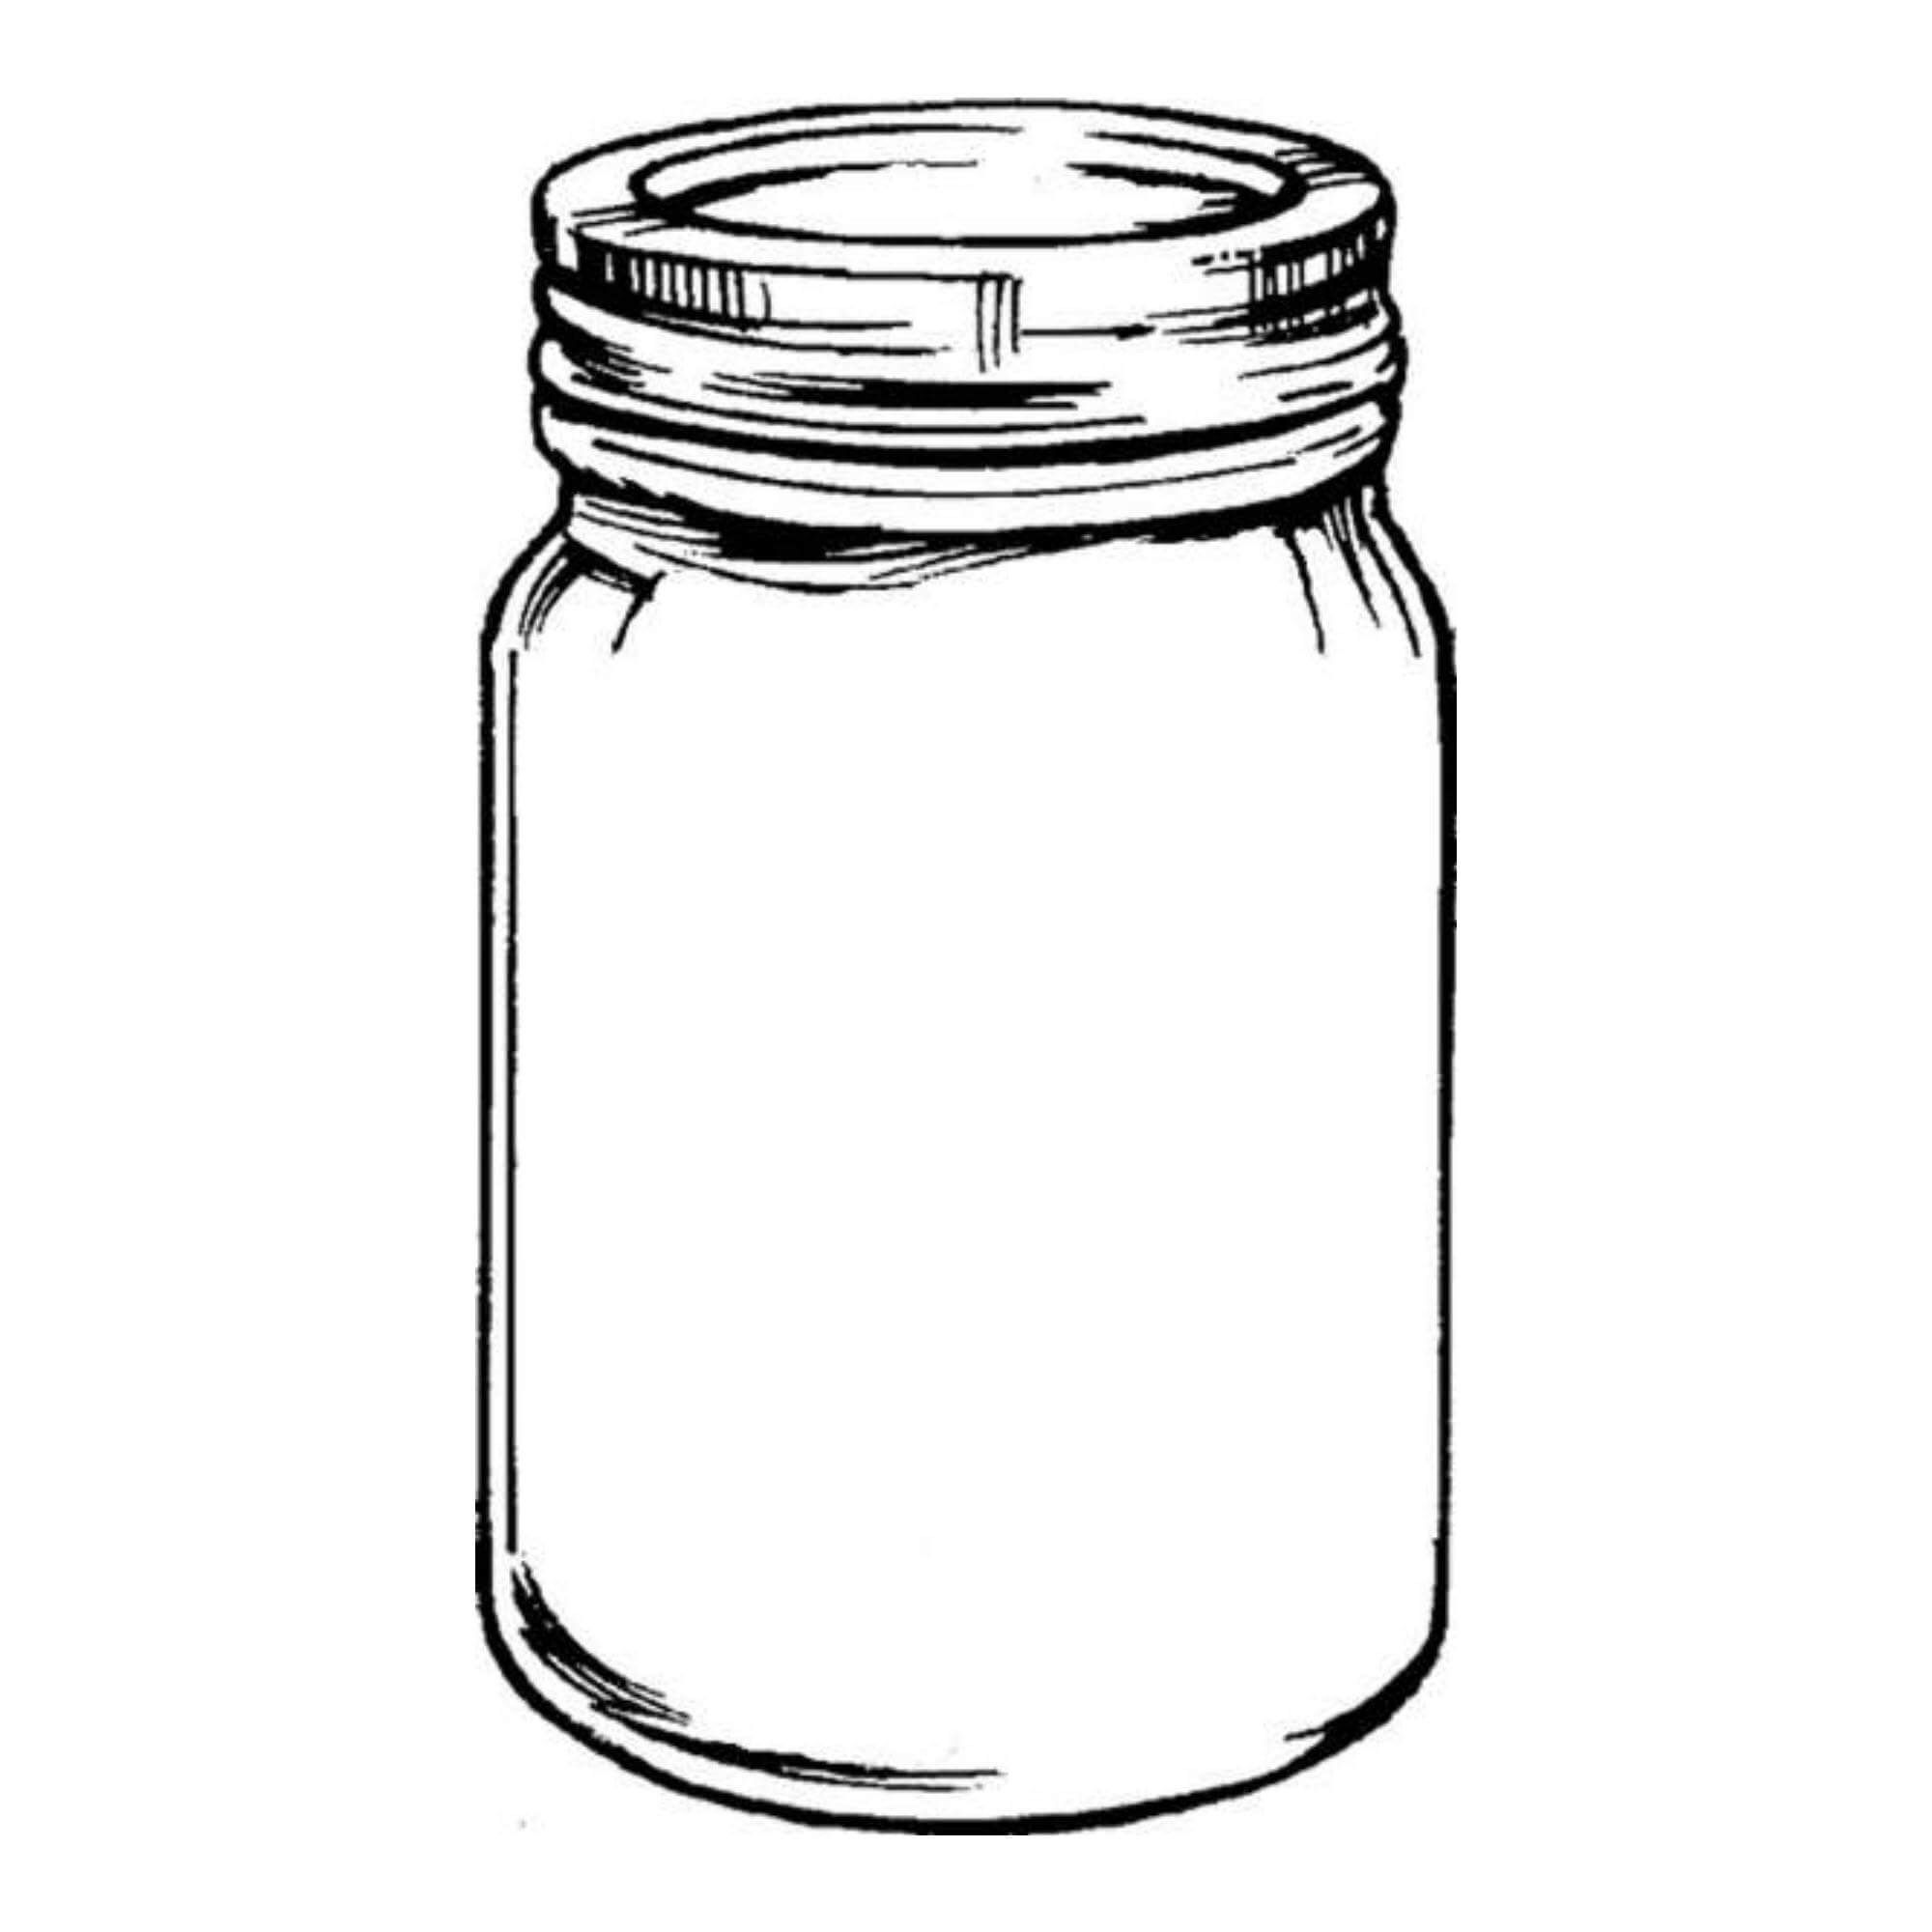 Bottle clipart jar, Bottle jar Transparent FREE for download on ...